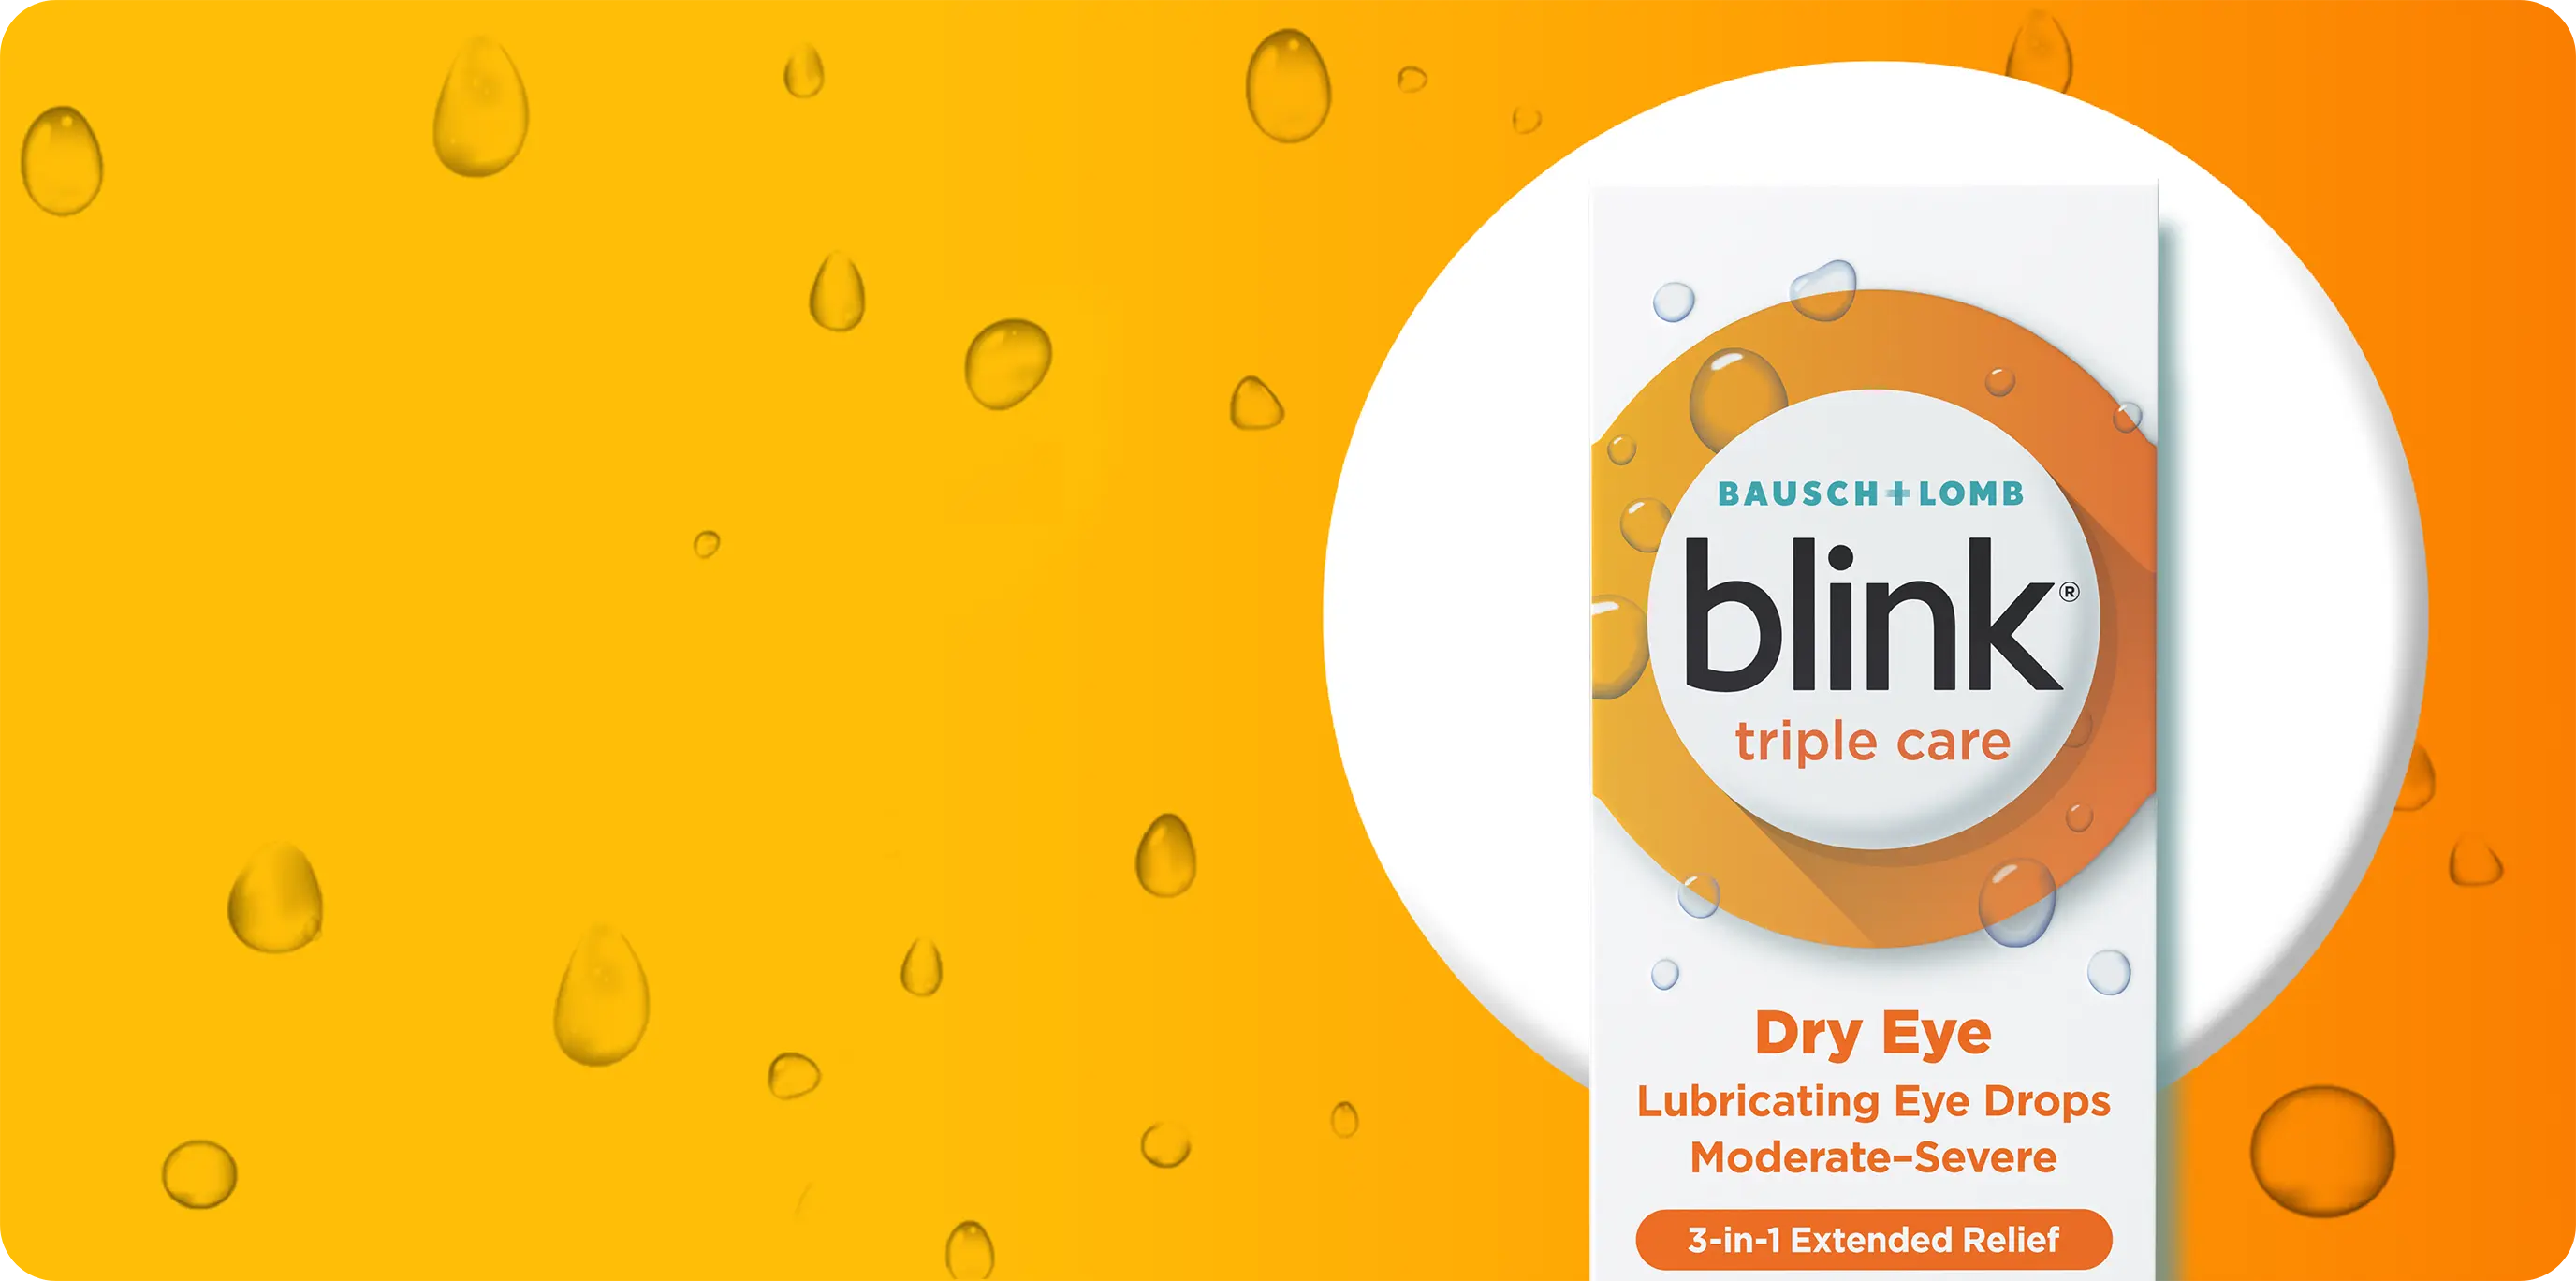 Blink Triple Care Lubricating Eye Drops package